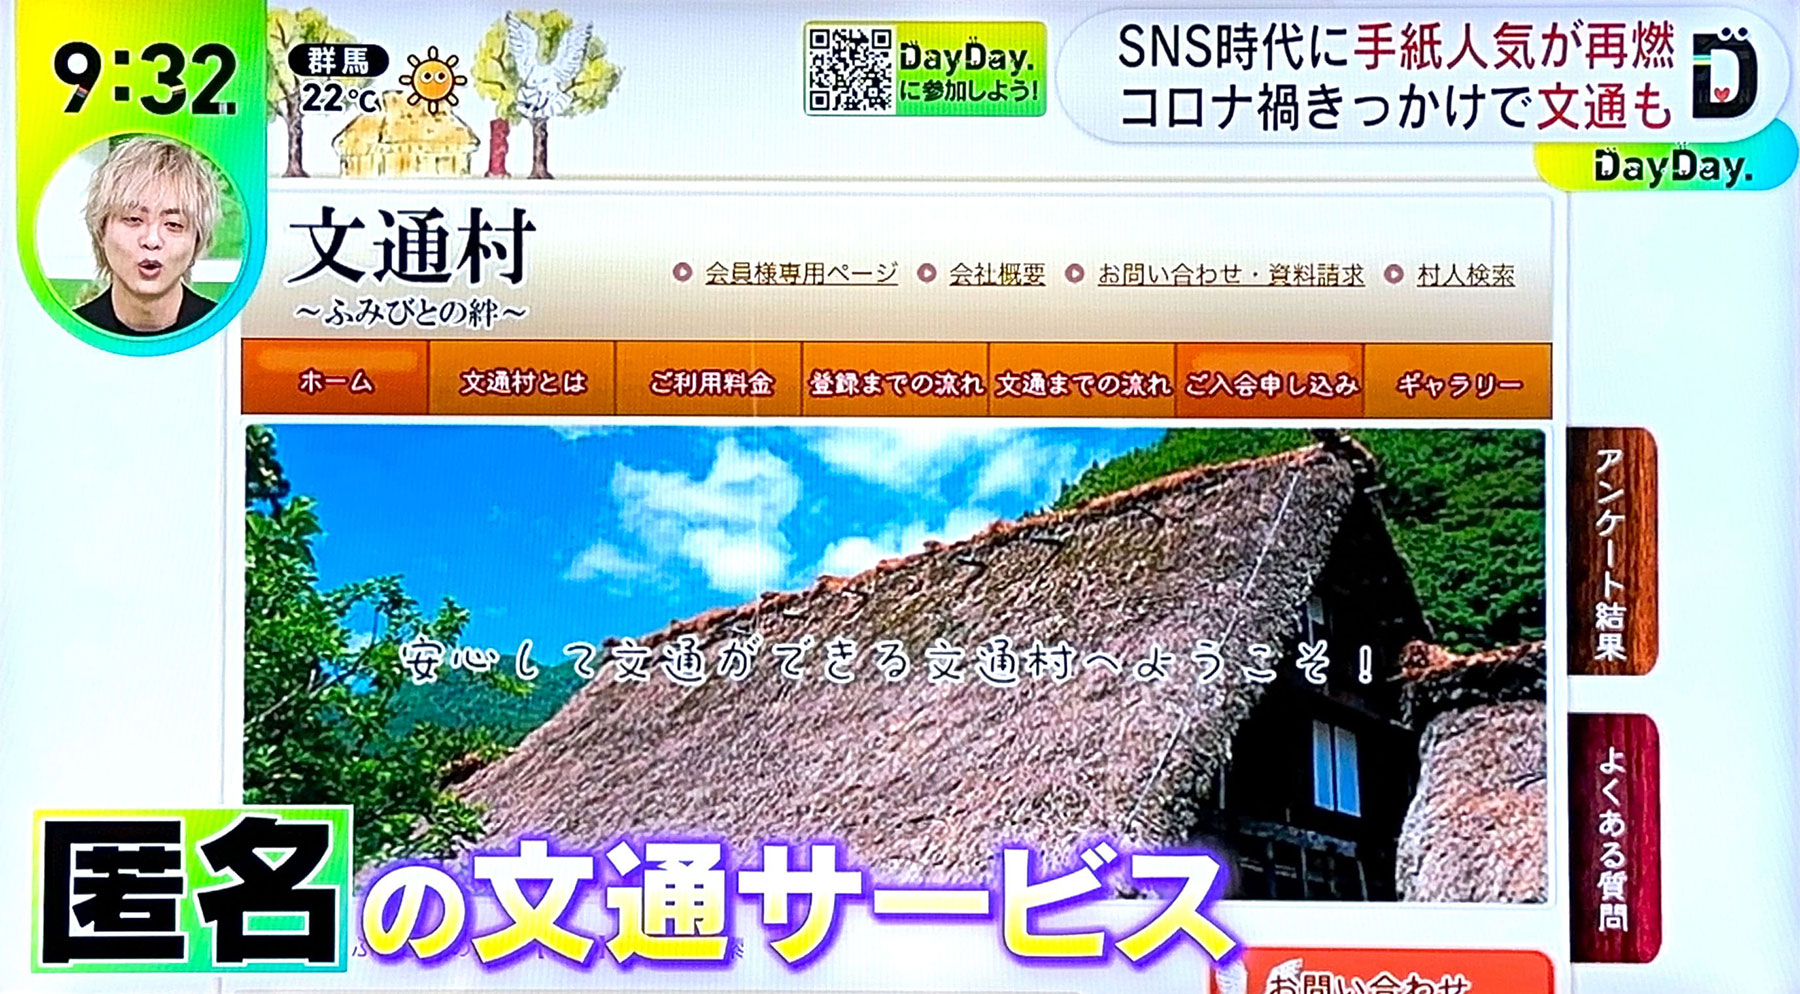 2023年5月9日、日本テレビ「DayDay.」で弊社サービス『文通村』が紹介されました。